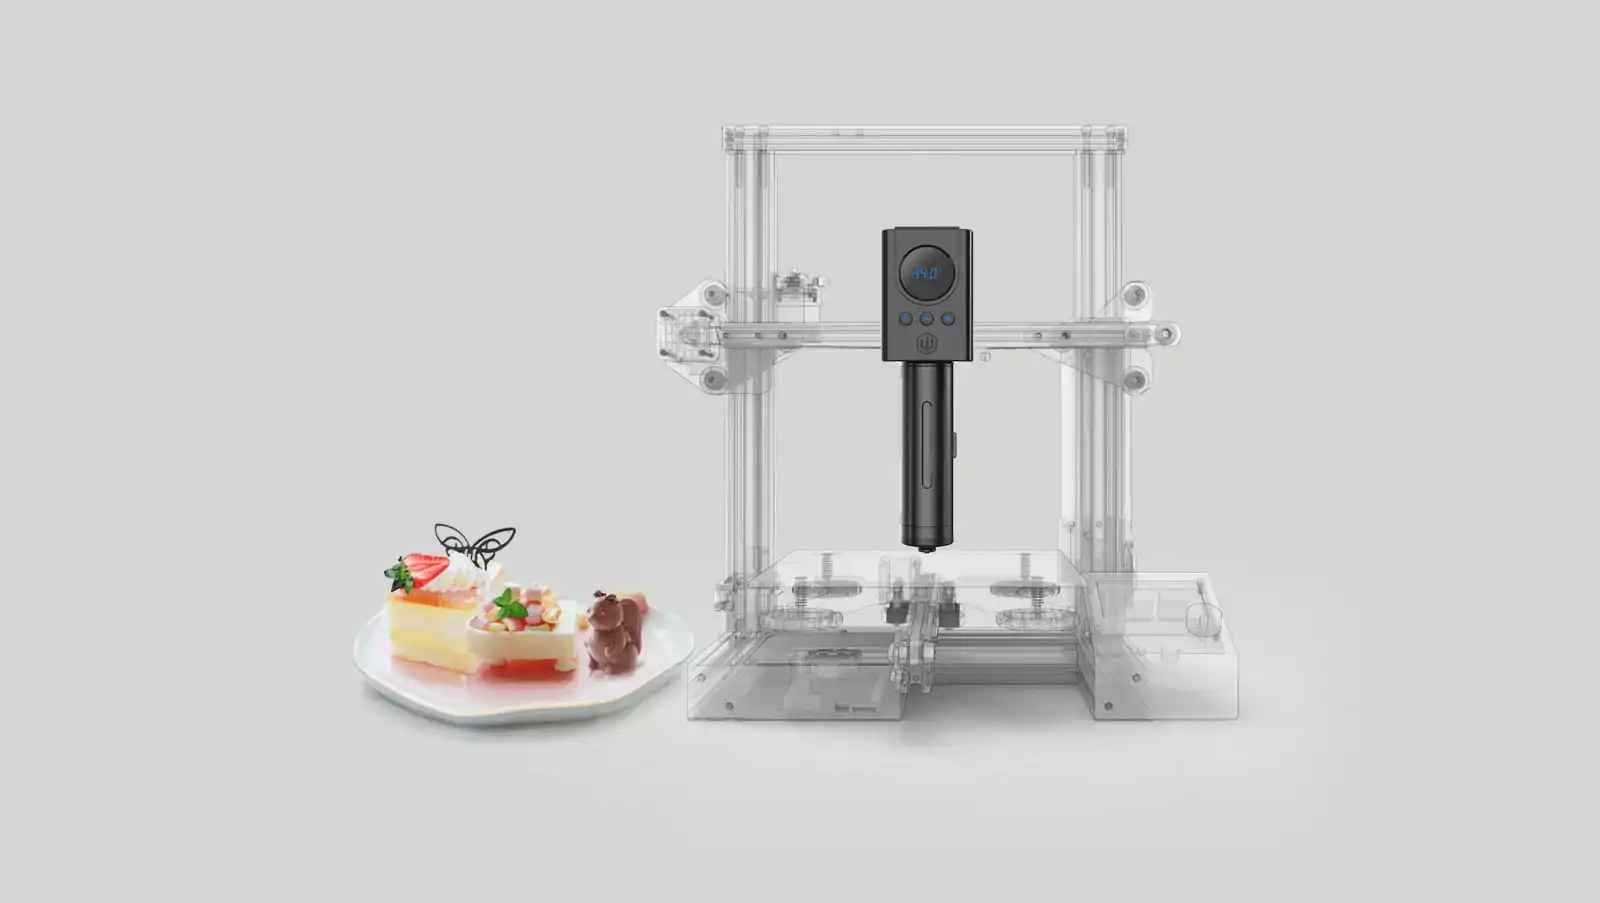 يطبع LuckyBot 3D الطعام باستخدام الشوكولاتة والبطاطا المهروسة